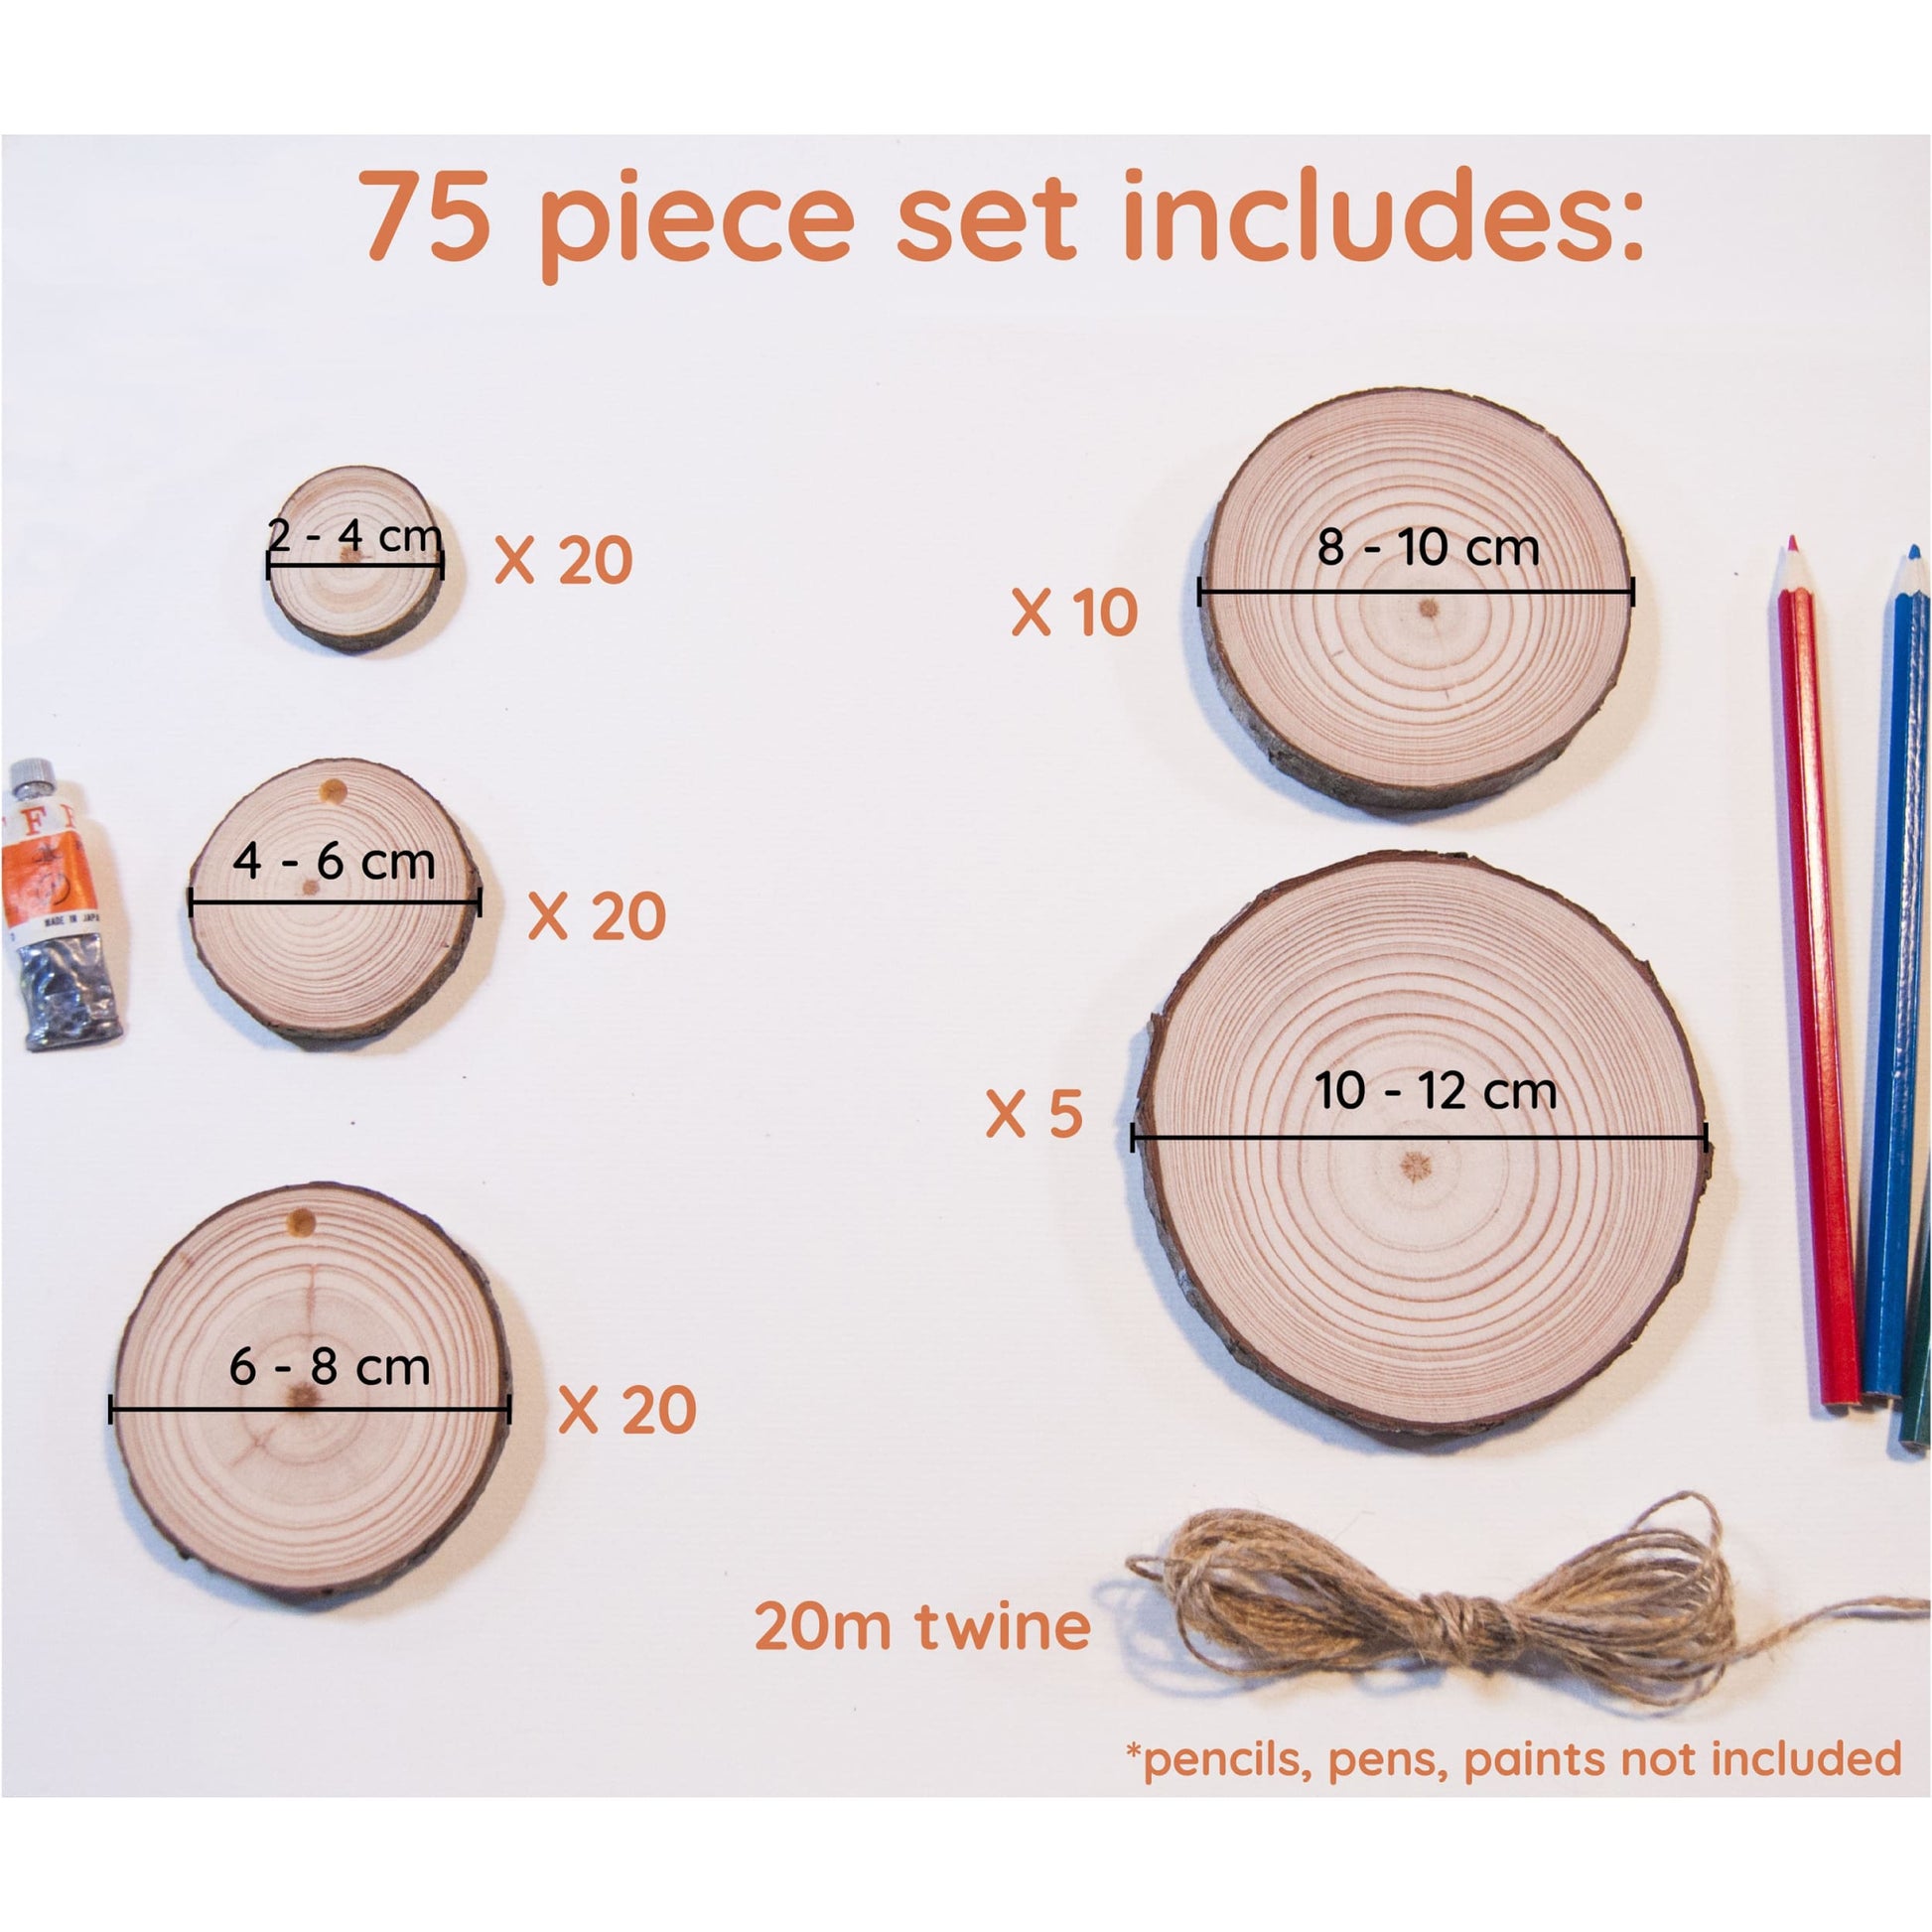 75 Piece Wood Slice Craft Pack - Wood slice kits